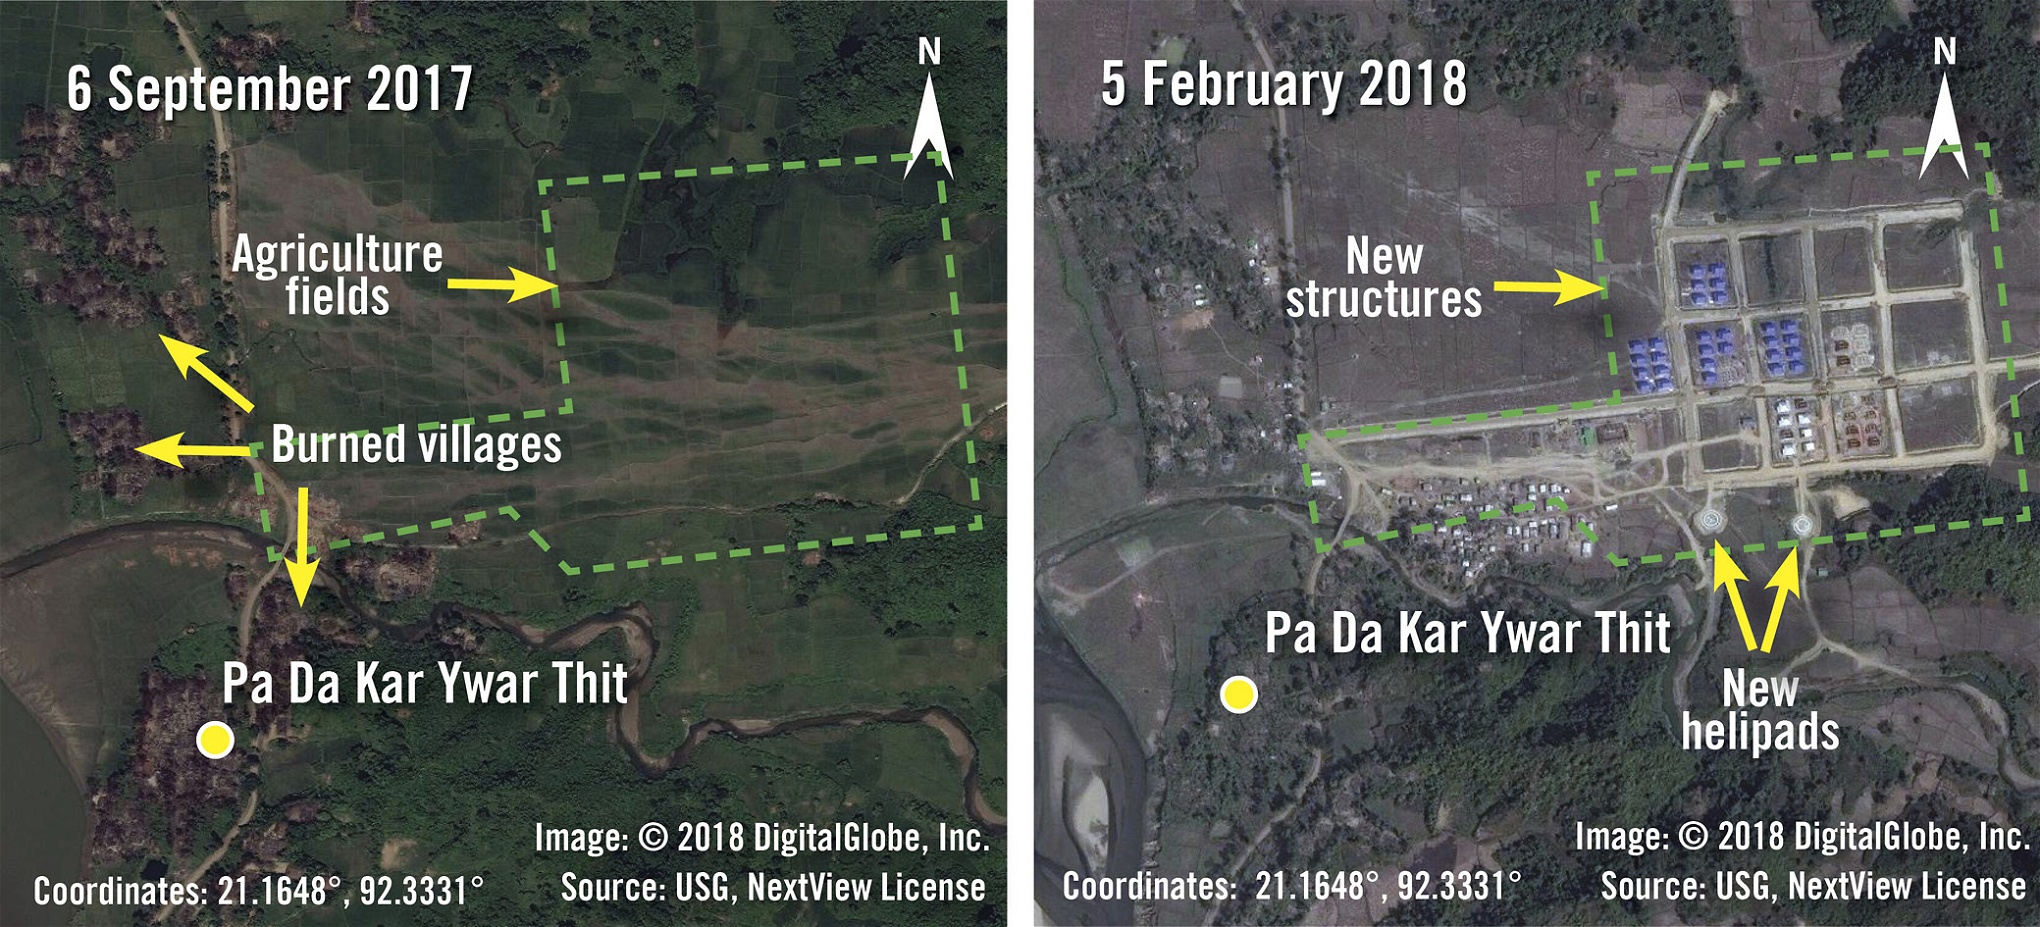 Dessa två satellitbilder, som Amnesty International släppt, visar byn Pa Da Kar Ywar Thit i Rakhine i september 2017 respektive februari 2018. På den högra, nyare bilden syns hur byggnader och helikopterplattor uppförts på det som tidigare varit jordbruksmark – något som, tillsammans med ögonvittnesskildringar, tolkats som att området i snabb takt försetts med
militäranläggningar efter att rohingyerna fördrivits och deras byar bränts.